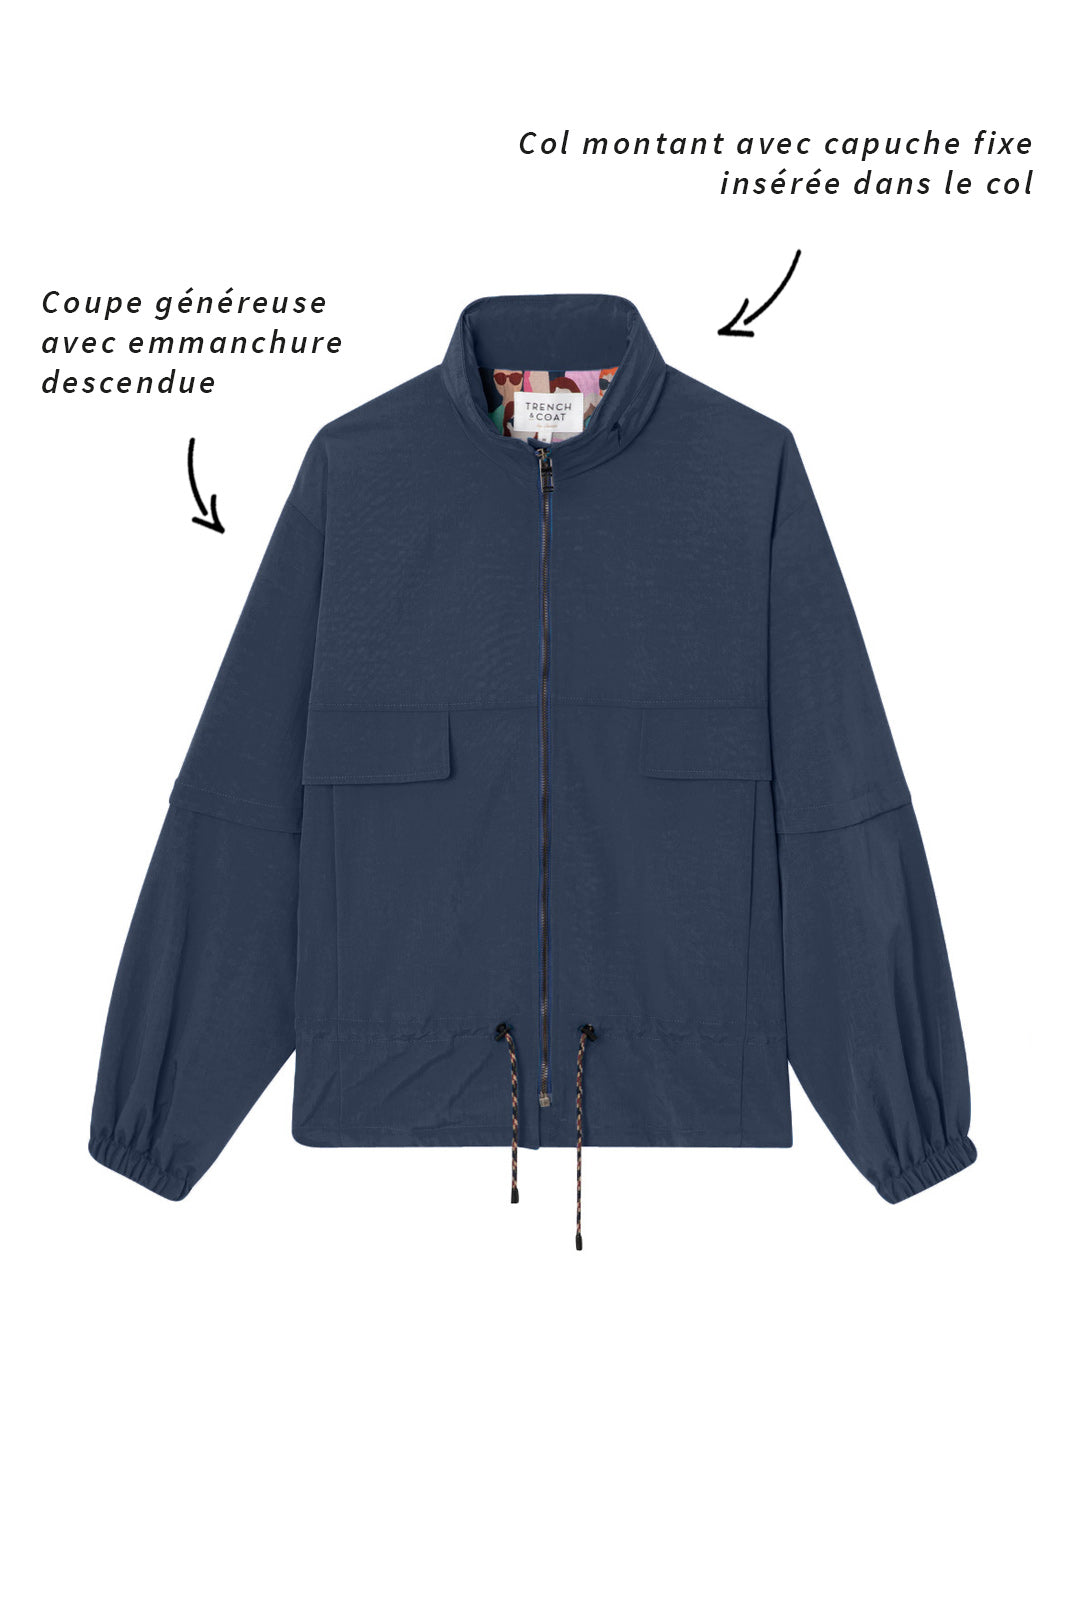 CHALIEU jacket-Generous navy blue short jacket